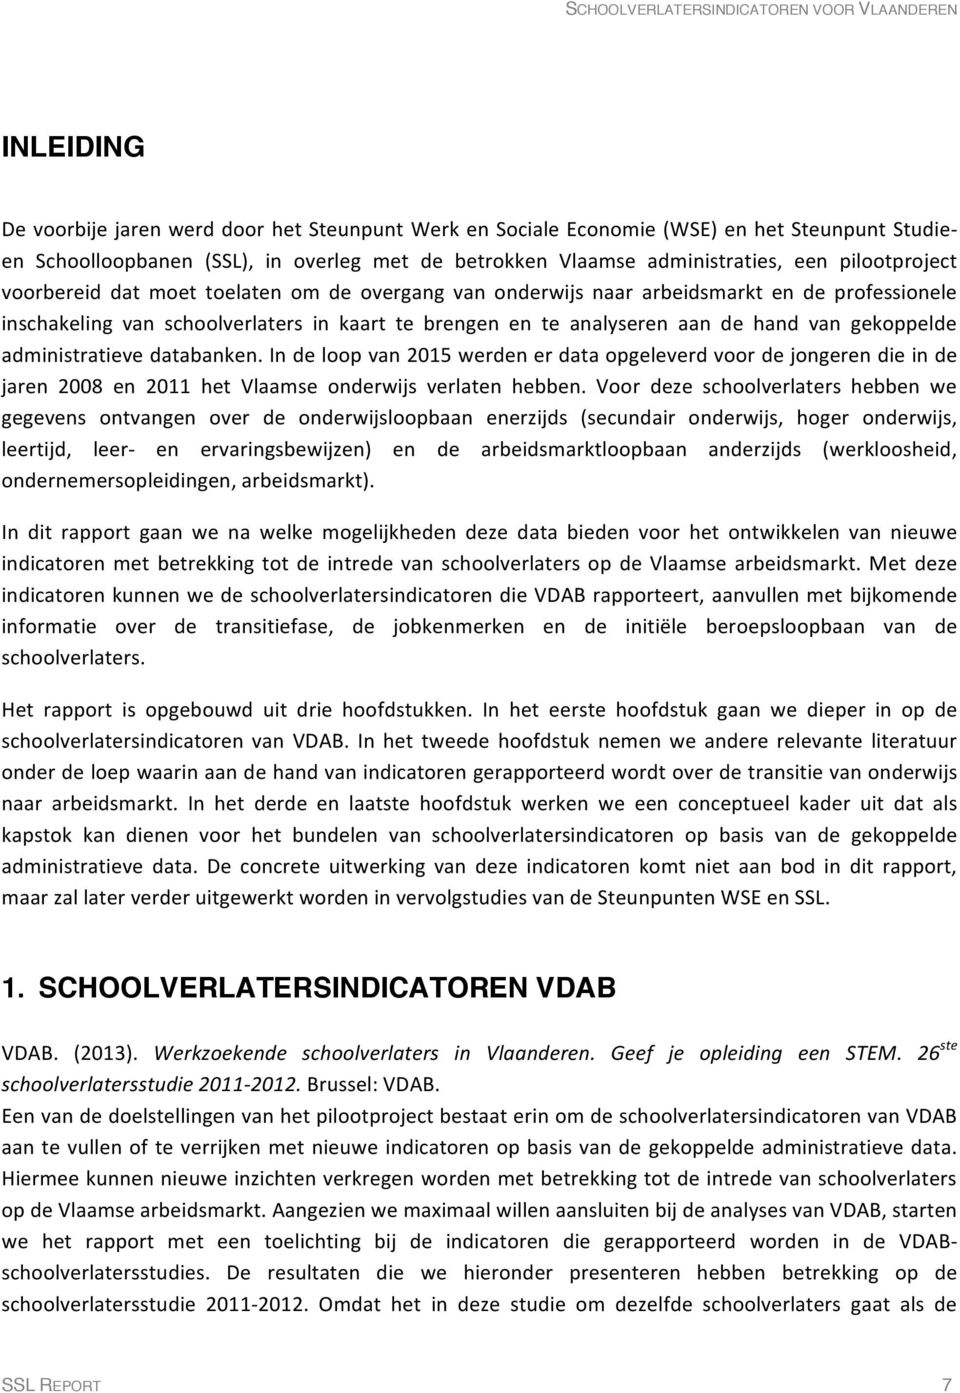 gekoppelde administratieve databanken. In de loop van 2015 werden er data opgeleverd voor de jongeren die in de jaren 2008 en 2011 het Vlaamse onderwijs verlaten hebben.